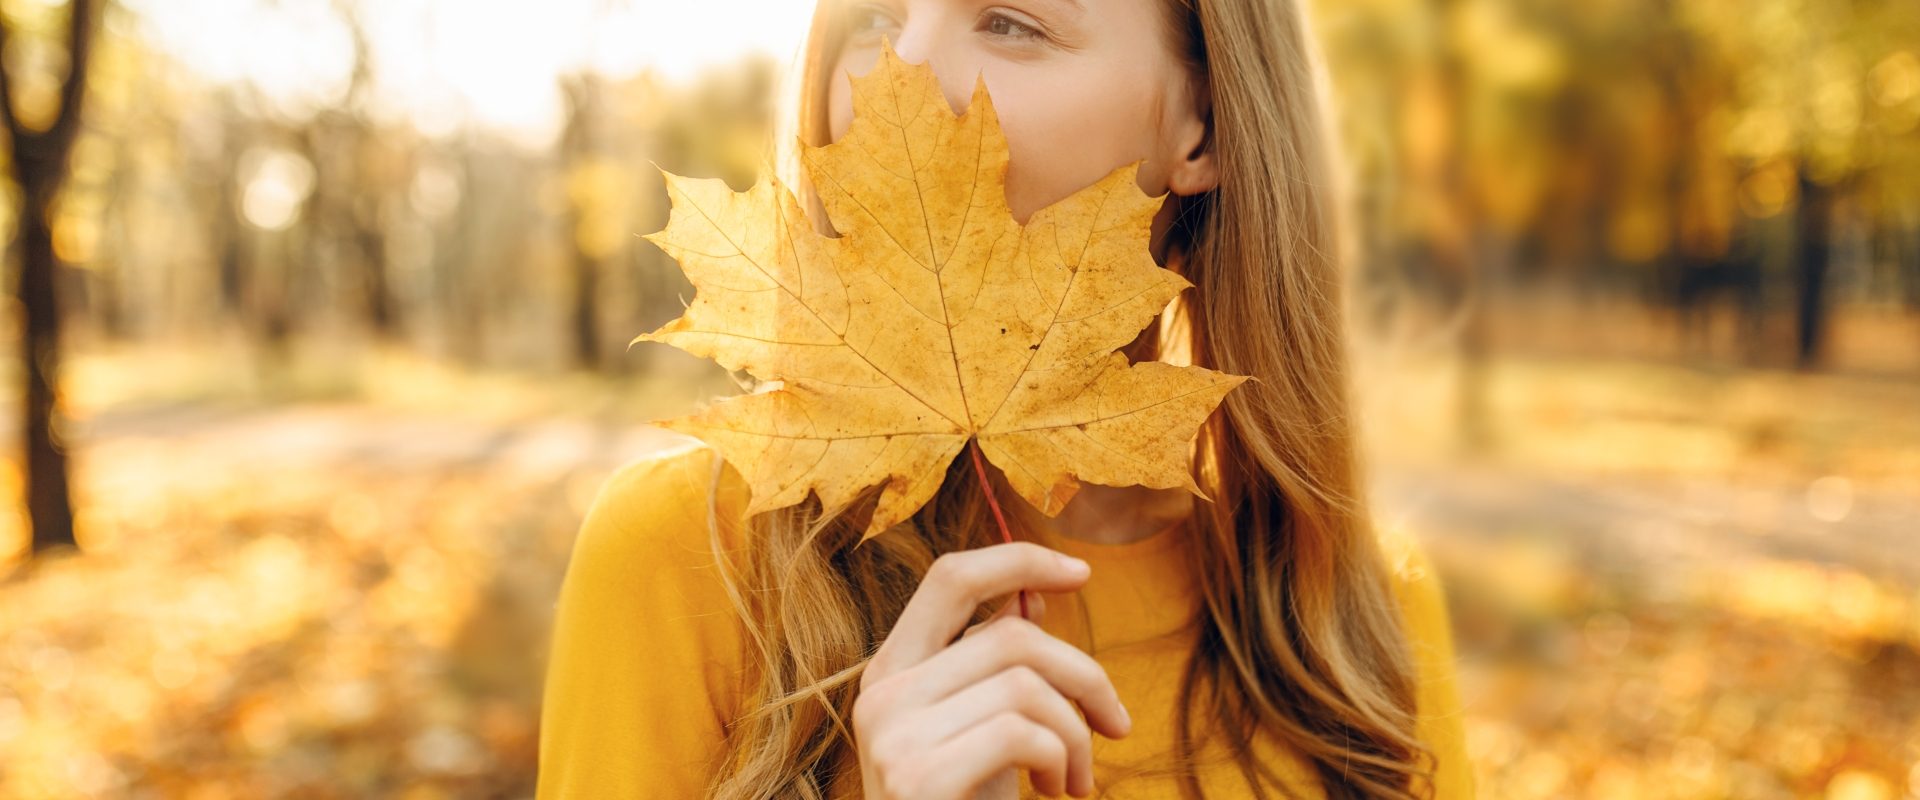 Naturalne sposoby na wzmocnienie odporności. Jak wzmocnić odporność jesienią i zimą? Młoda dziewczyna stoi w lesie i przykłada jesienny żółty liść do twarzy.